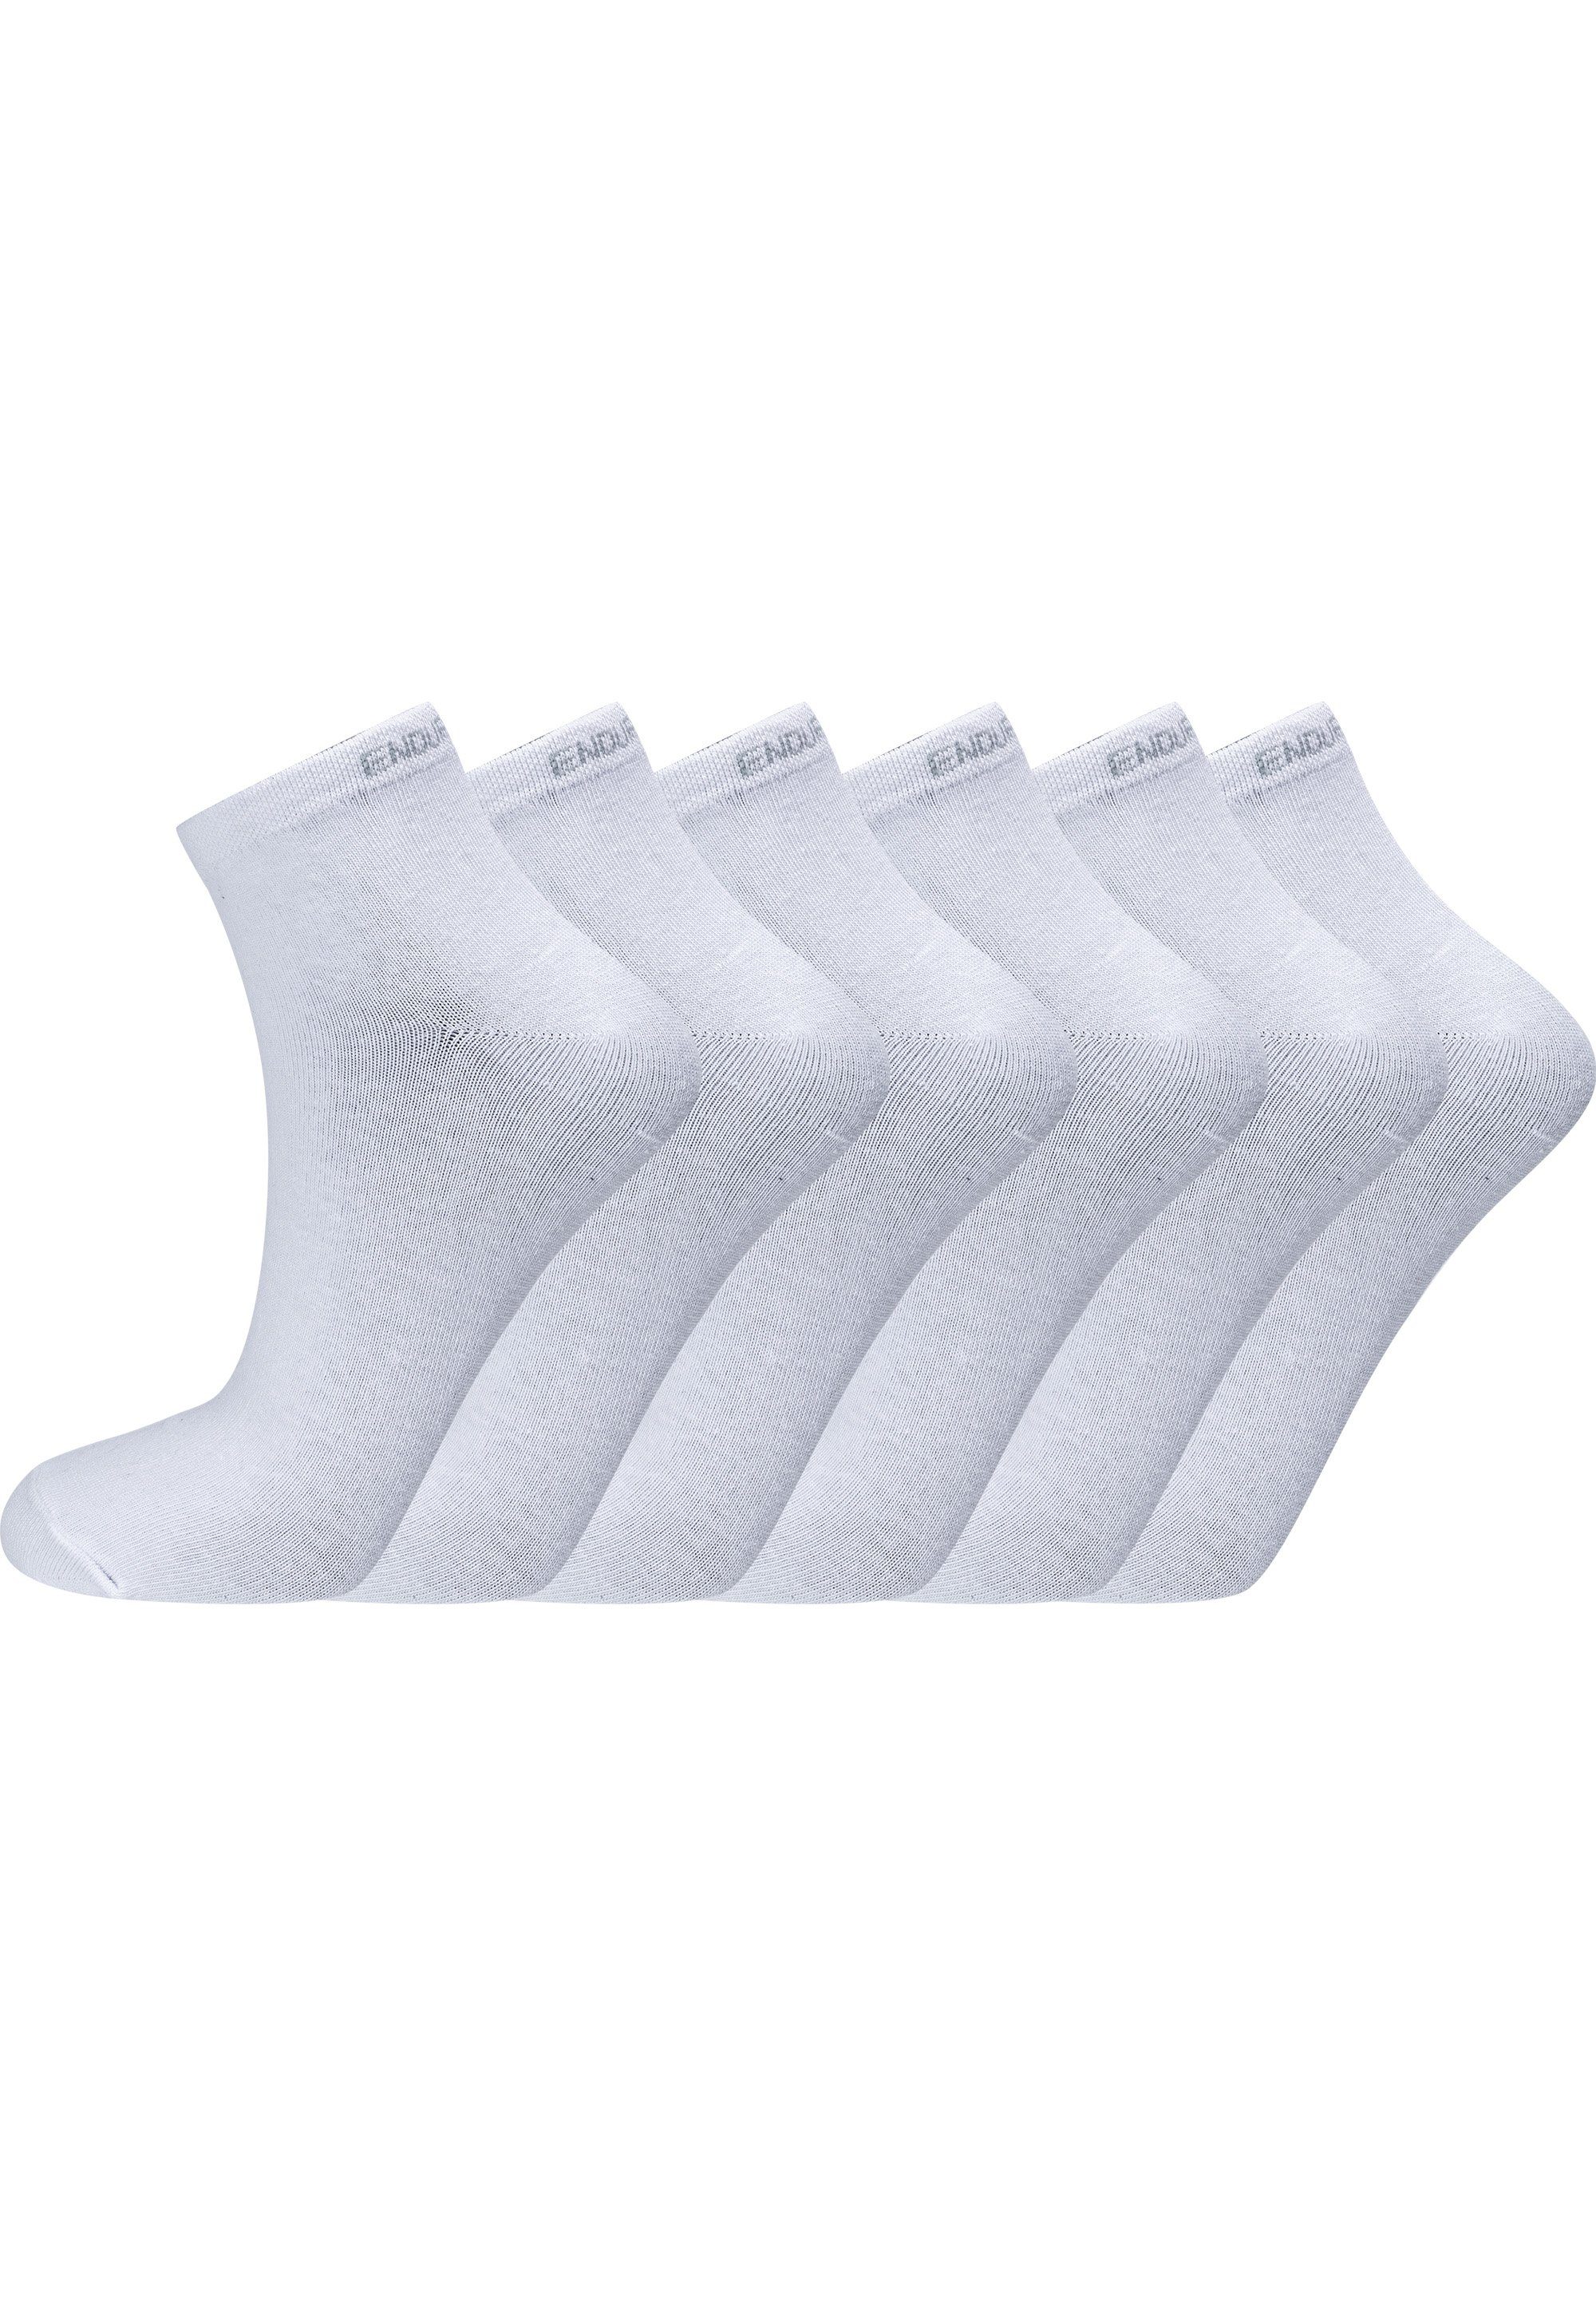 ENDURANCE Socken Ibi hohem weiß Baumwolle-Anteil mit (6-Paar) sehr